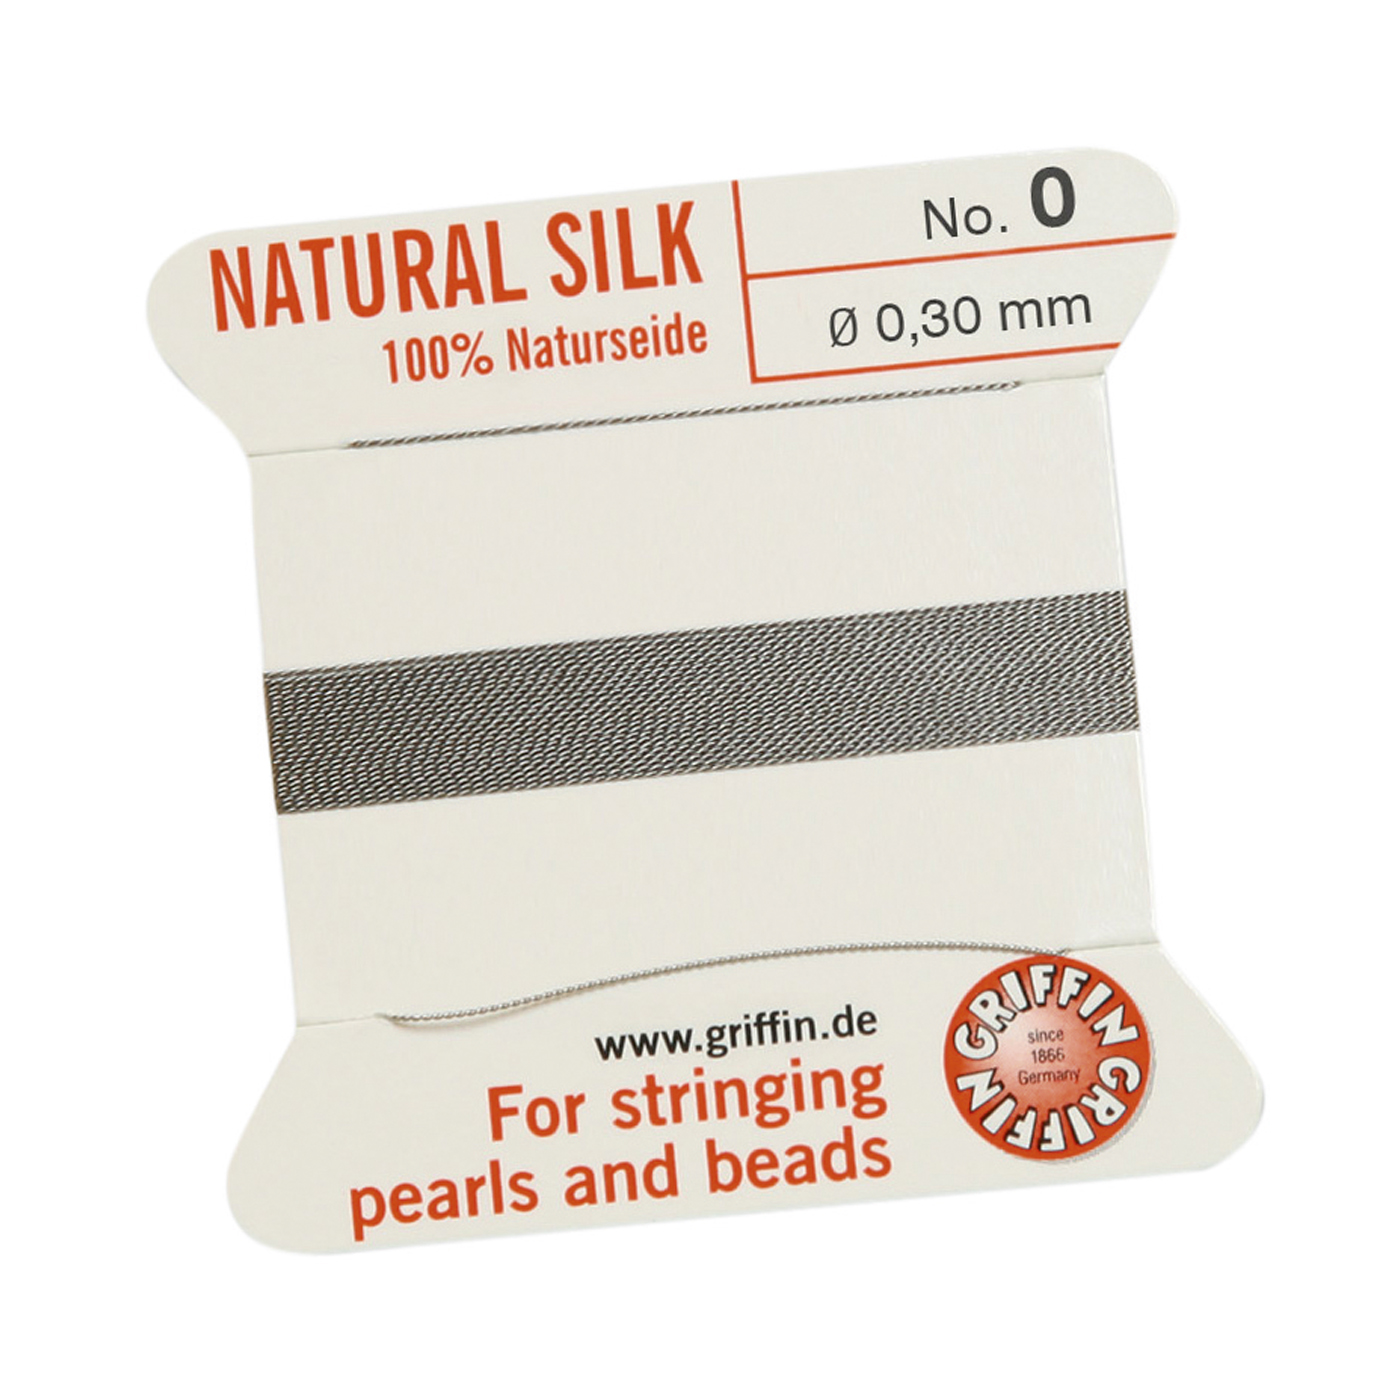 Bead Cord 100% Natural Silk, Grey, No. 0 - 2 m